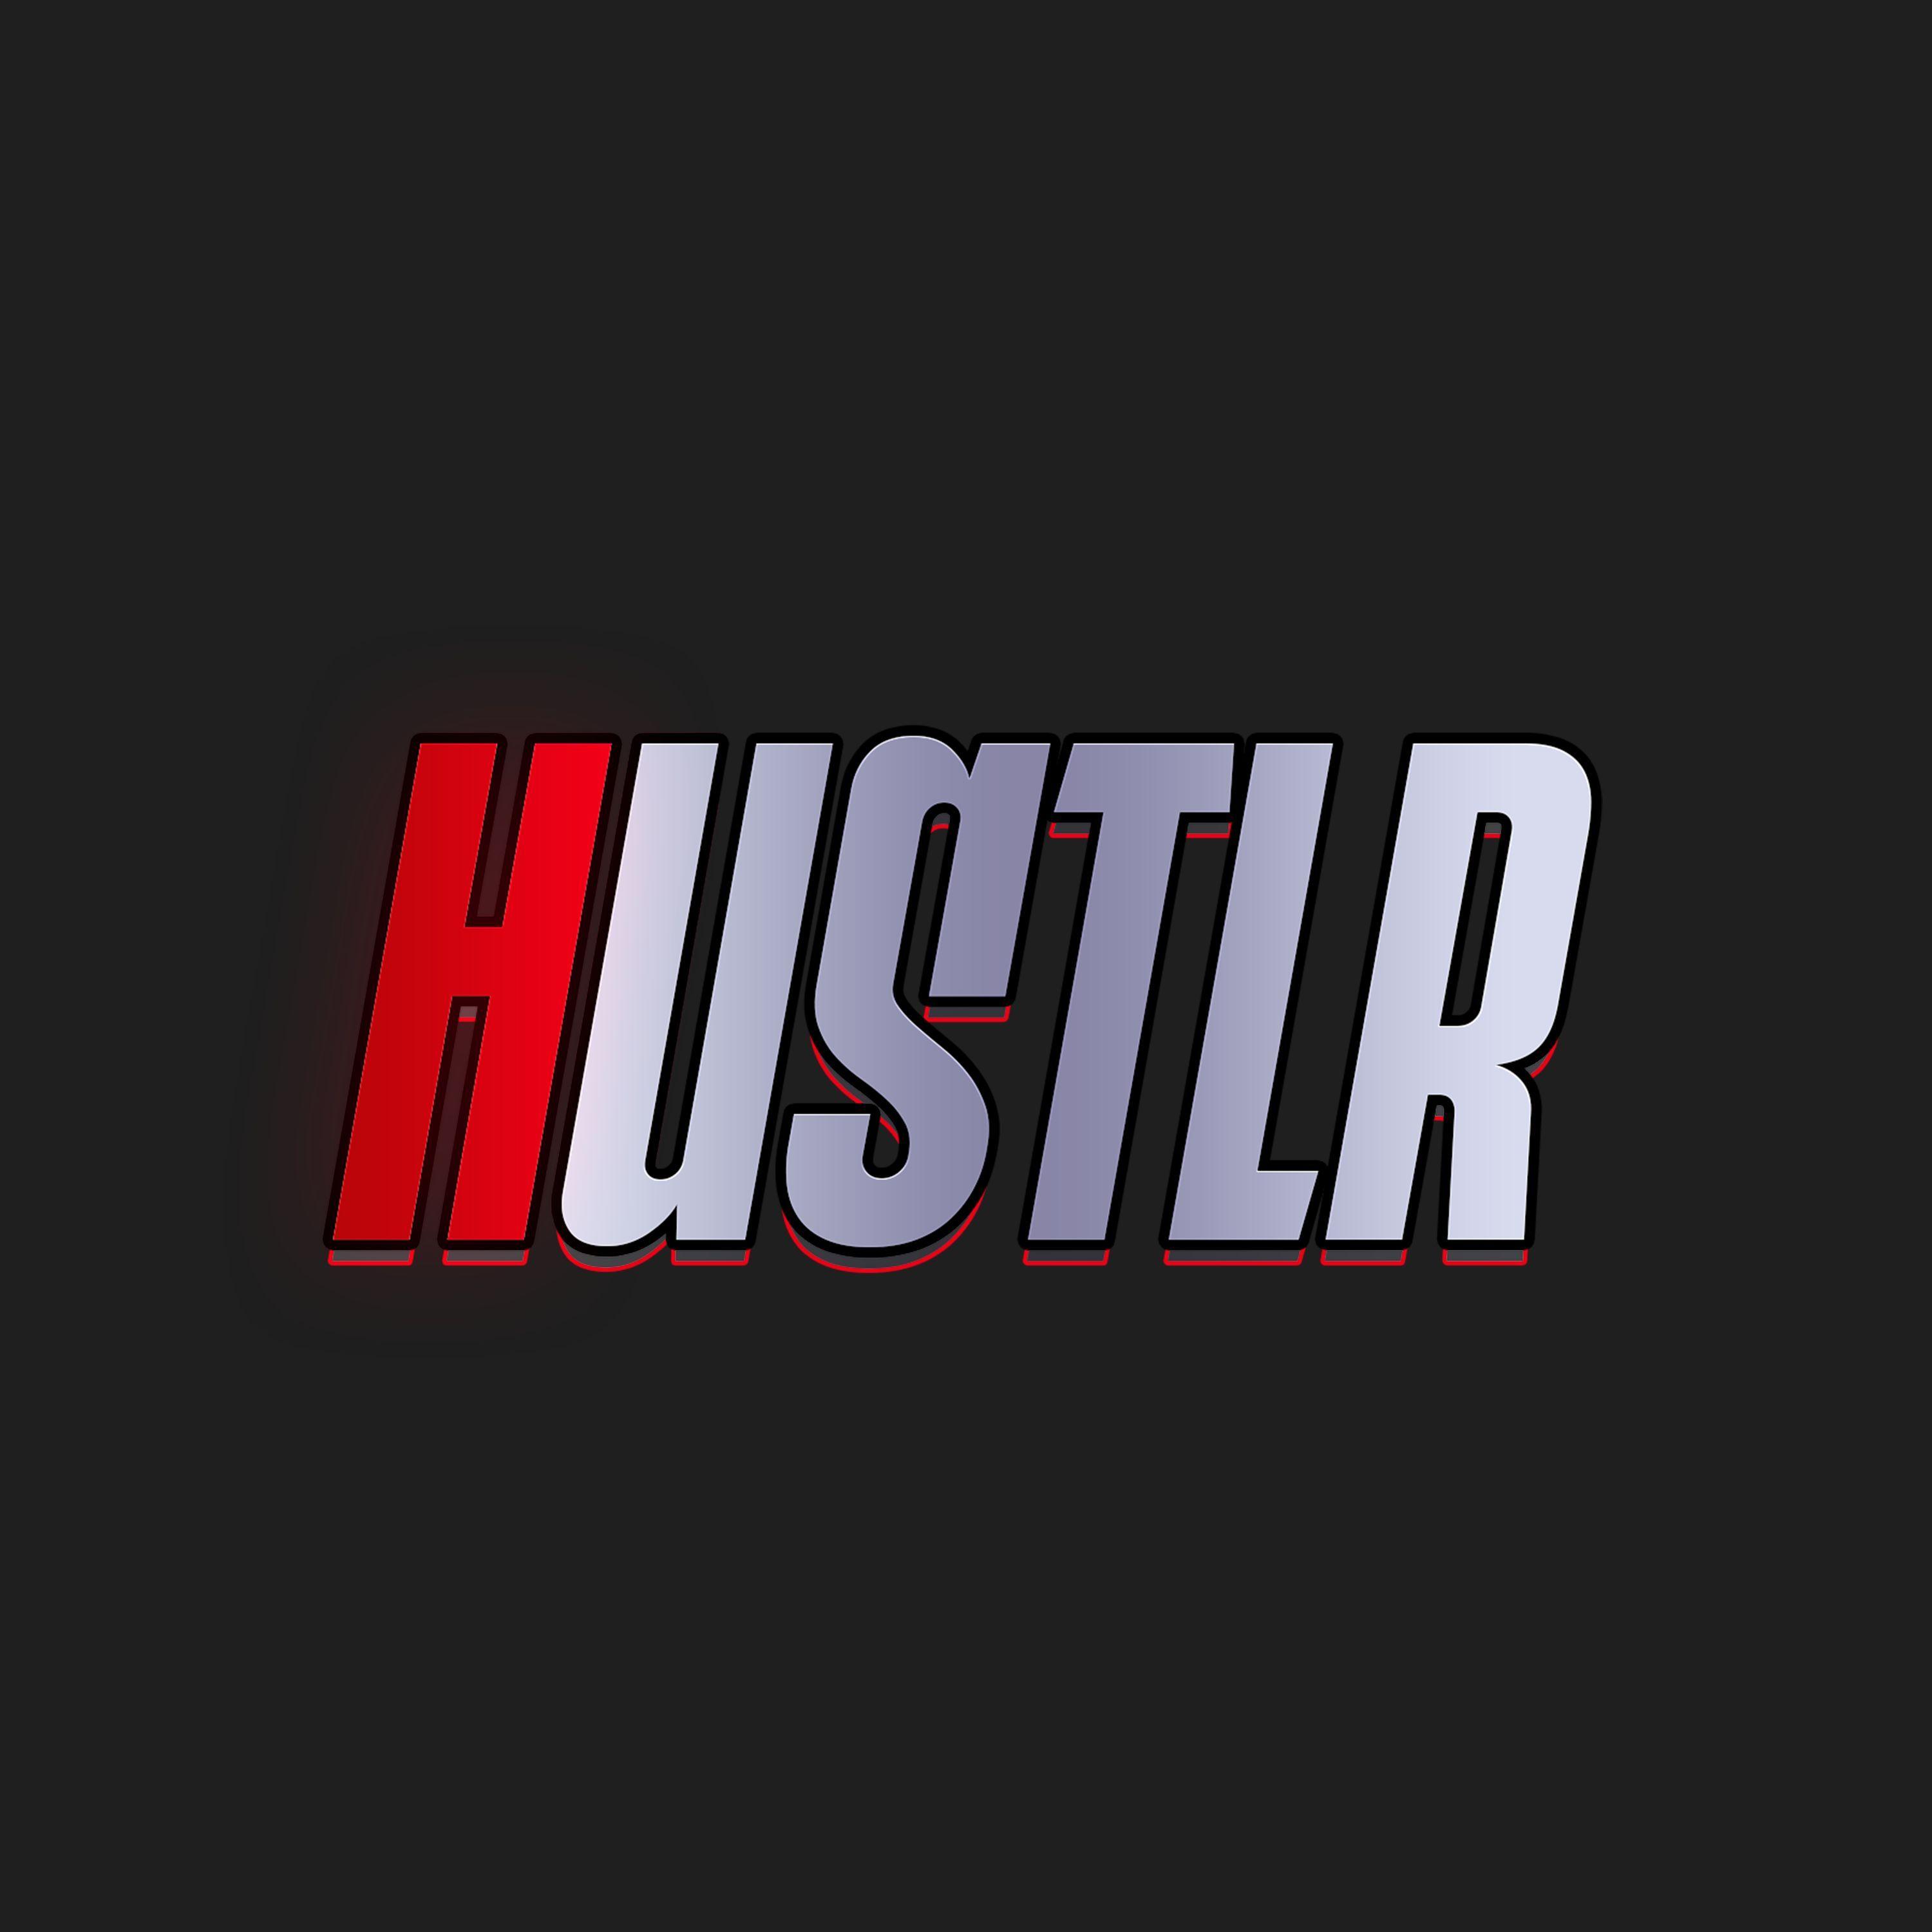 Player HUSTLRTTV avatar